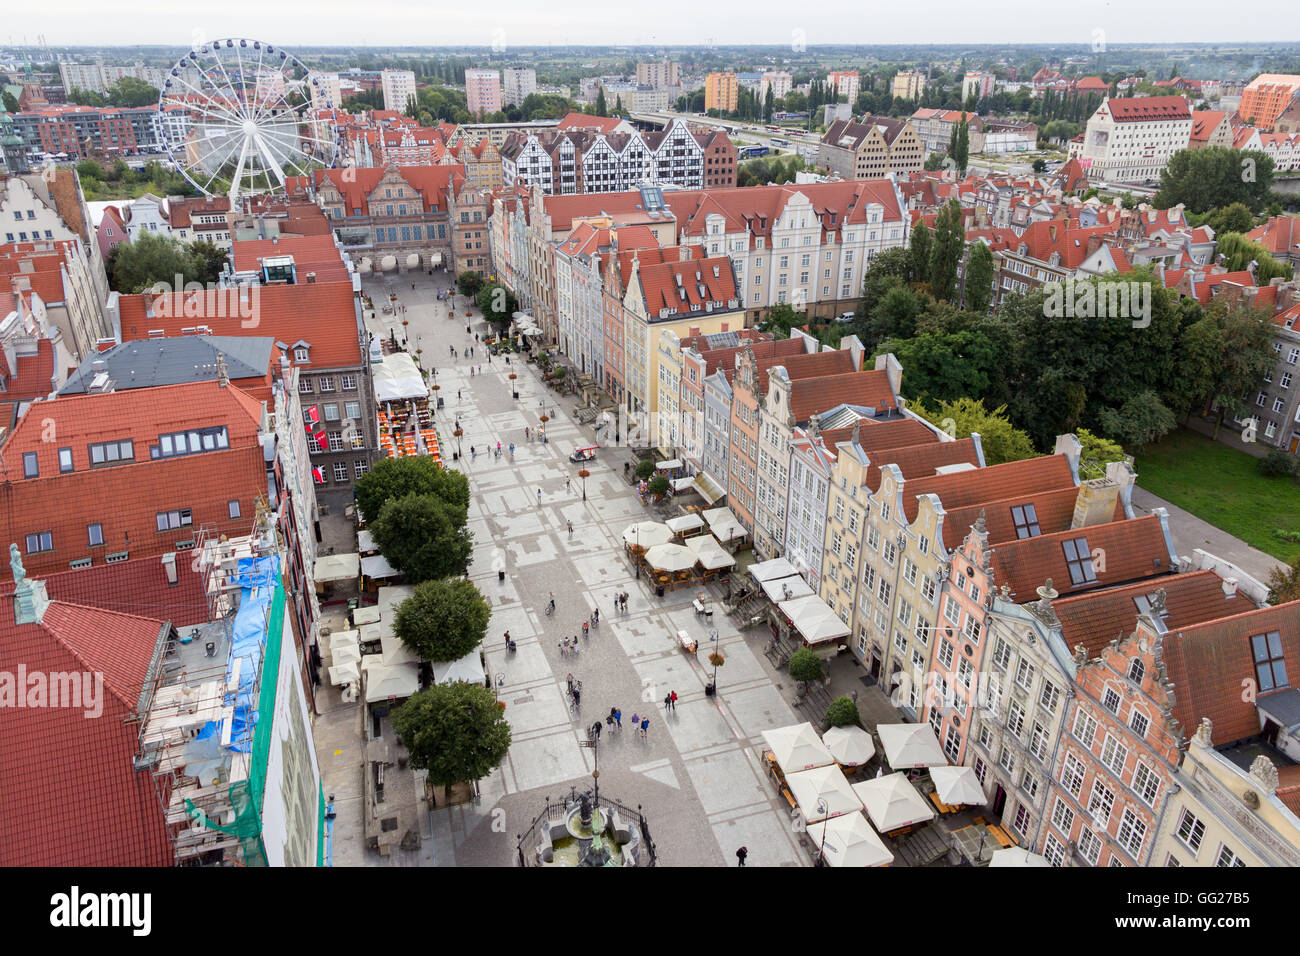 Vue sur le centre de la ville de Gdansk. La ville est la capitale historique de la Polish occidentale avec l'architecture de la vieille ville médiévale Banque D'Images